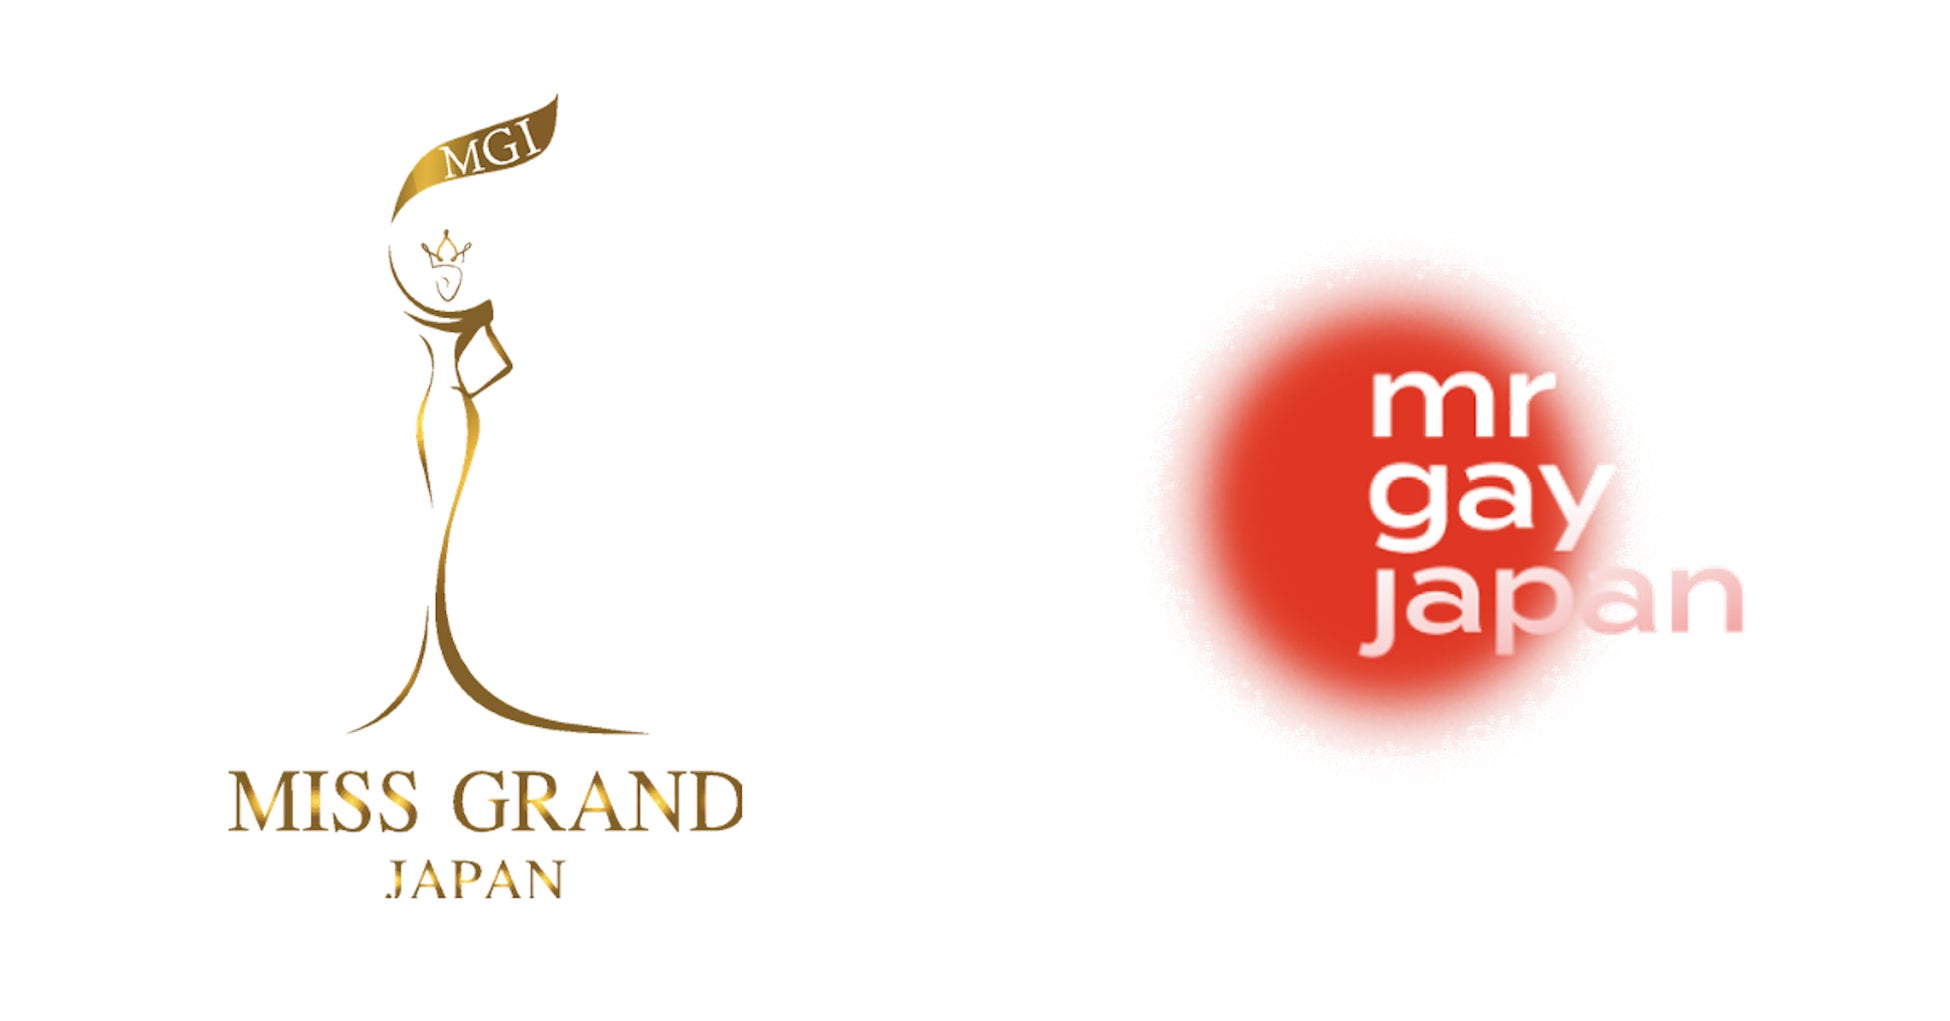 世界的ミスコンテストの日本大会『ミス・グランド・ジャパン』とLGBTQ＋のコンテストを同日開催のサブ画像1